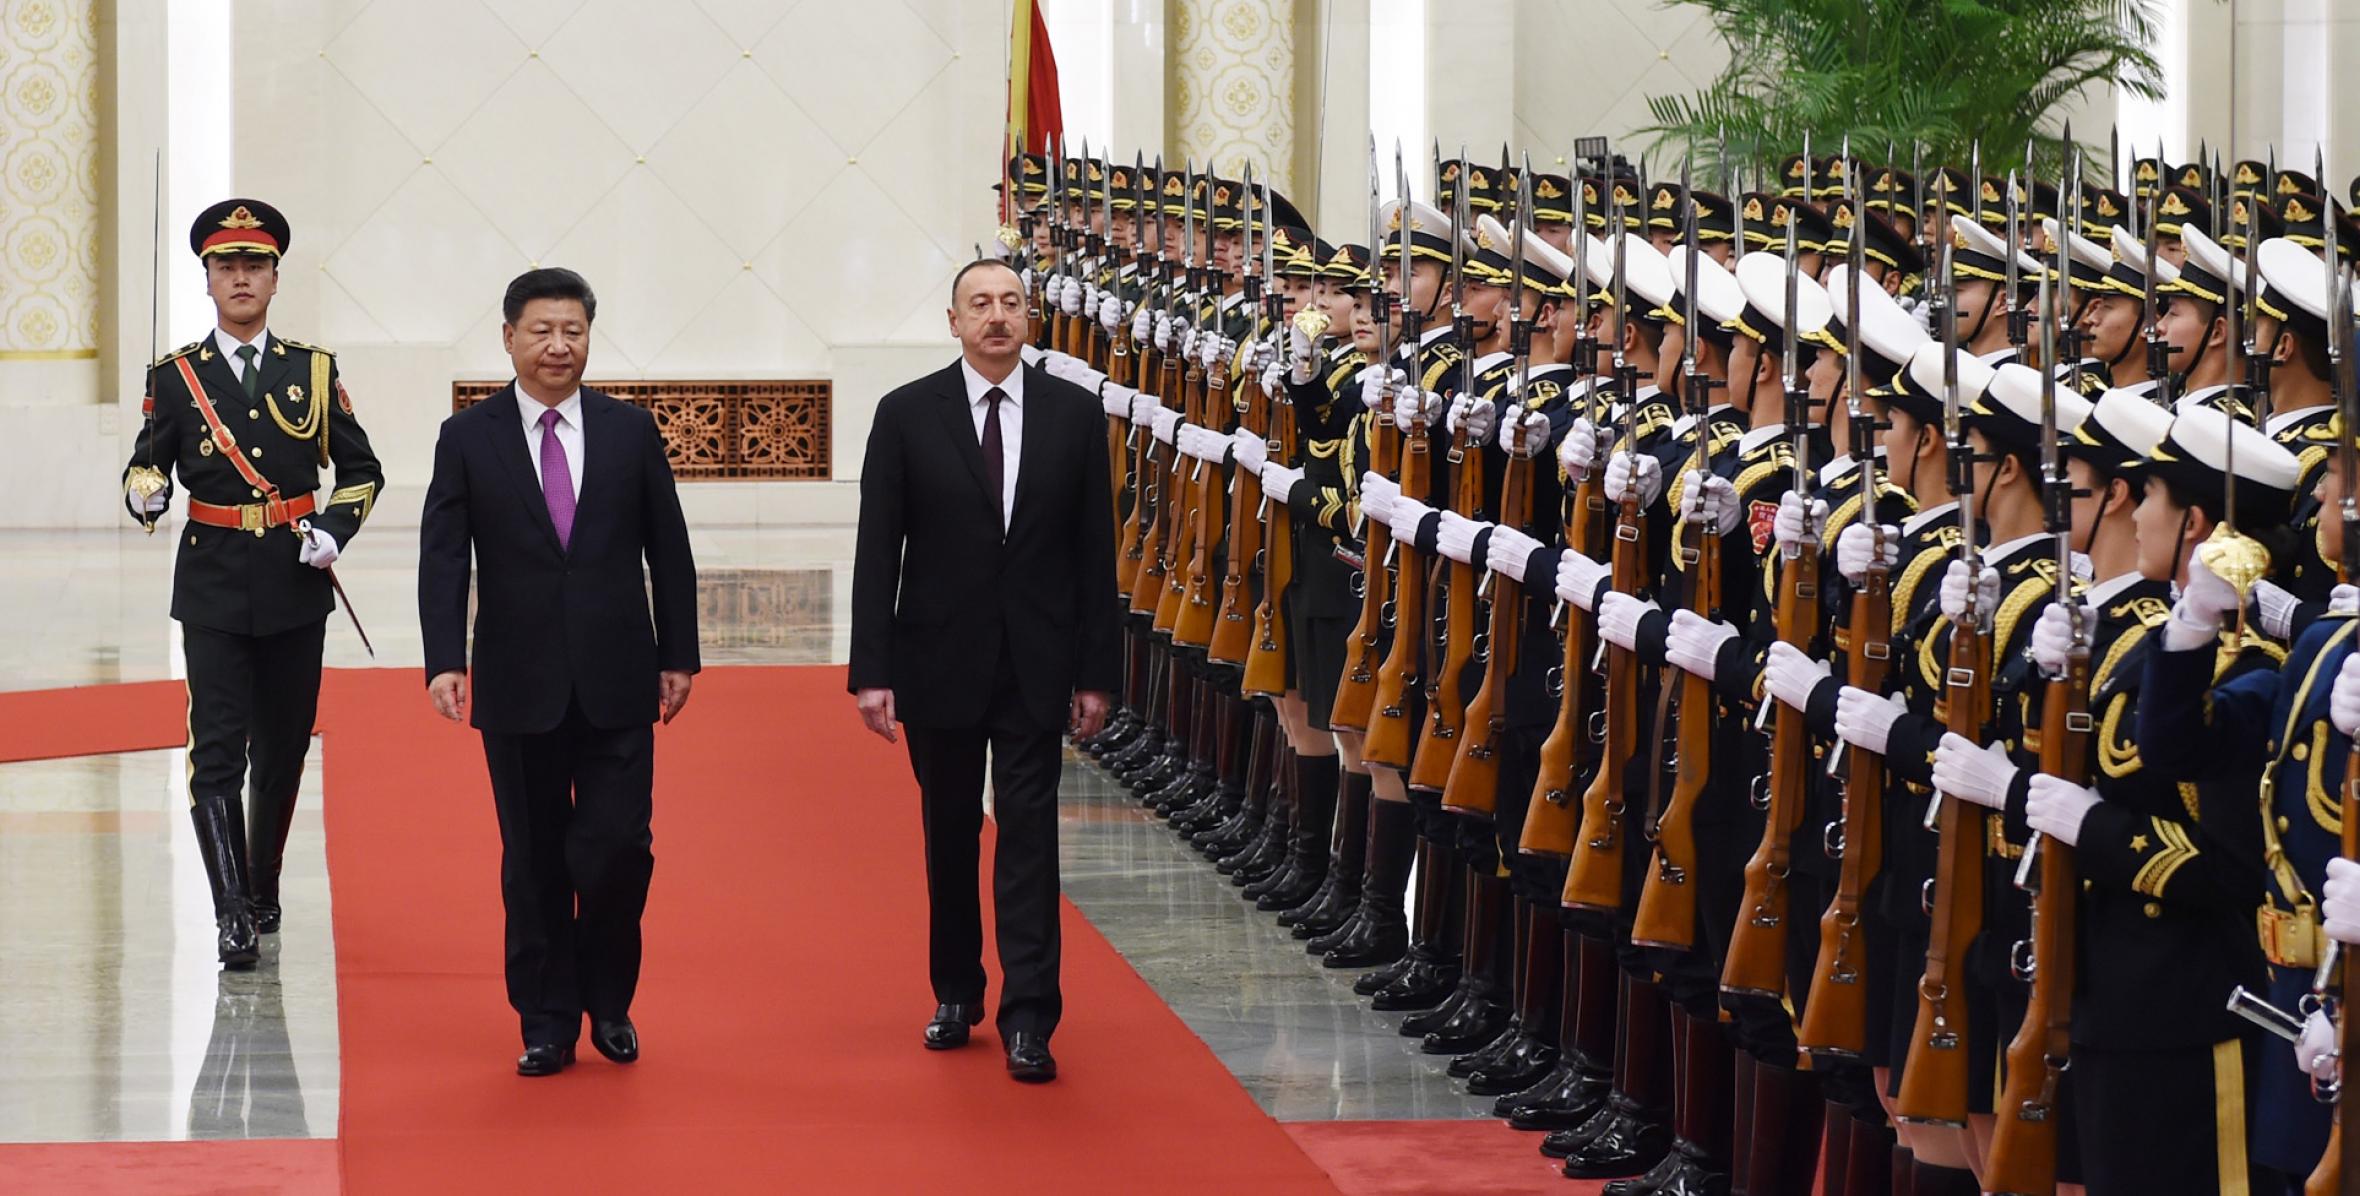 State visit of Ilham Aliyev to China